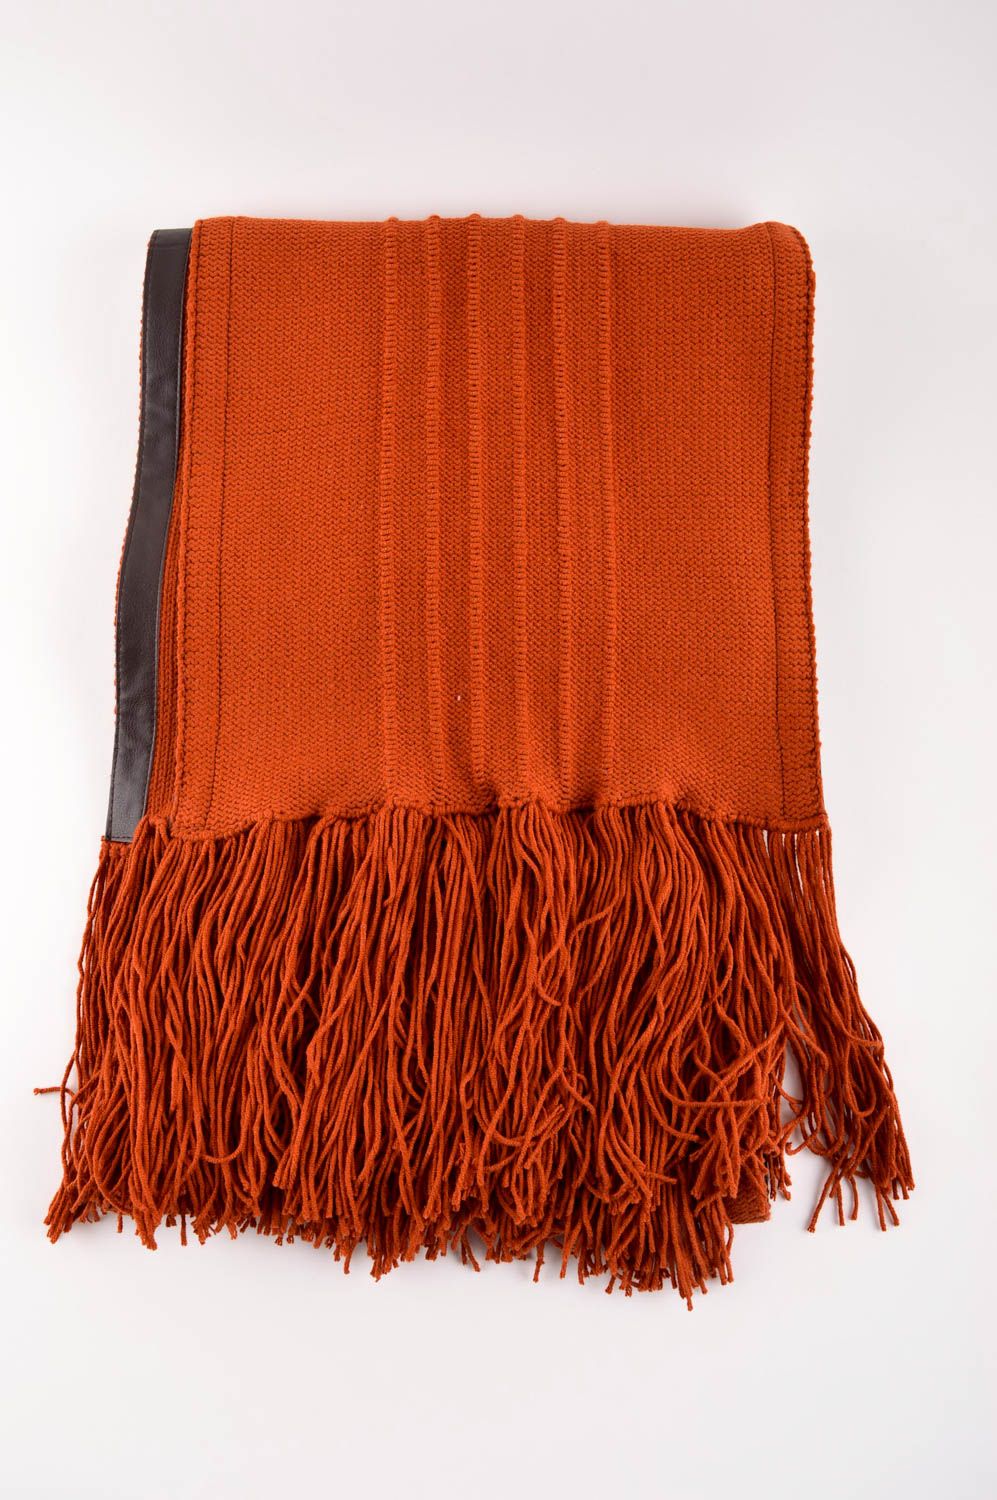 Шарф ручной работы оранжевый шарф на шею стильный теплый женский шарф длинный фото 3